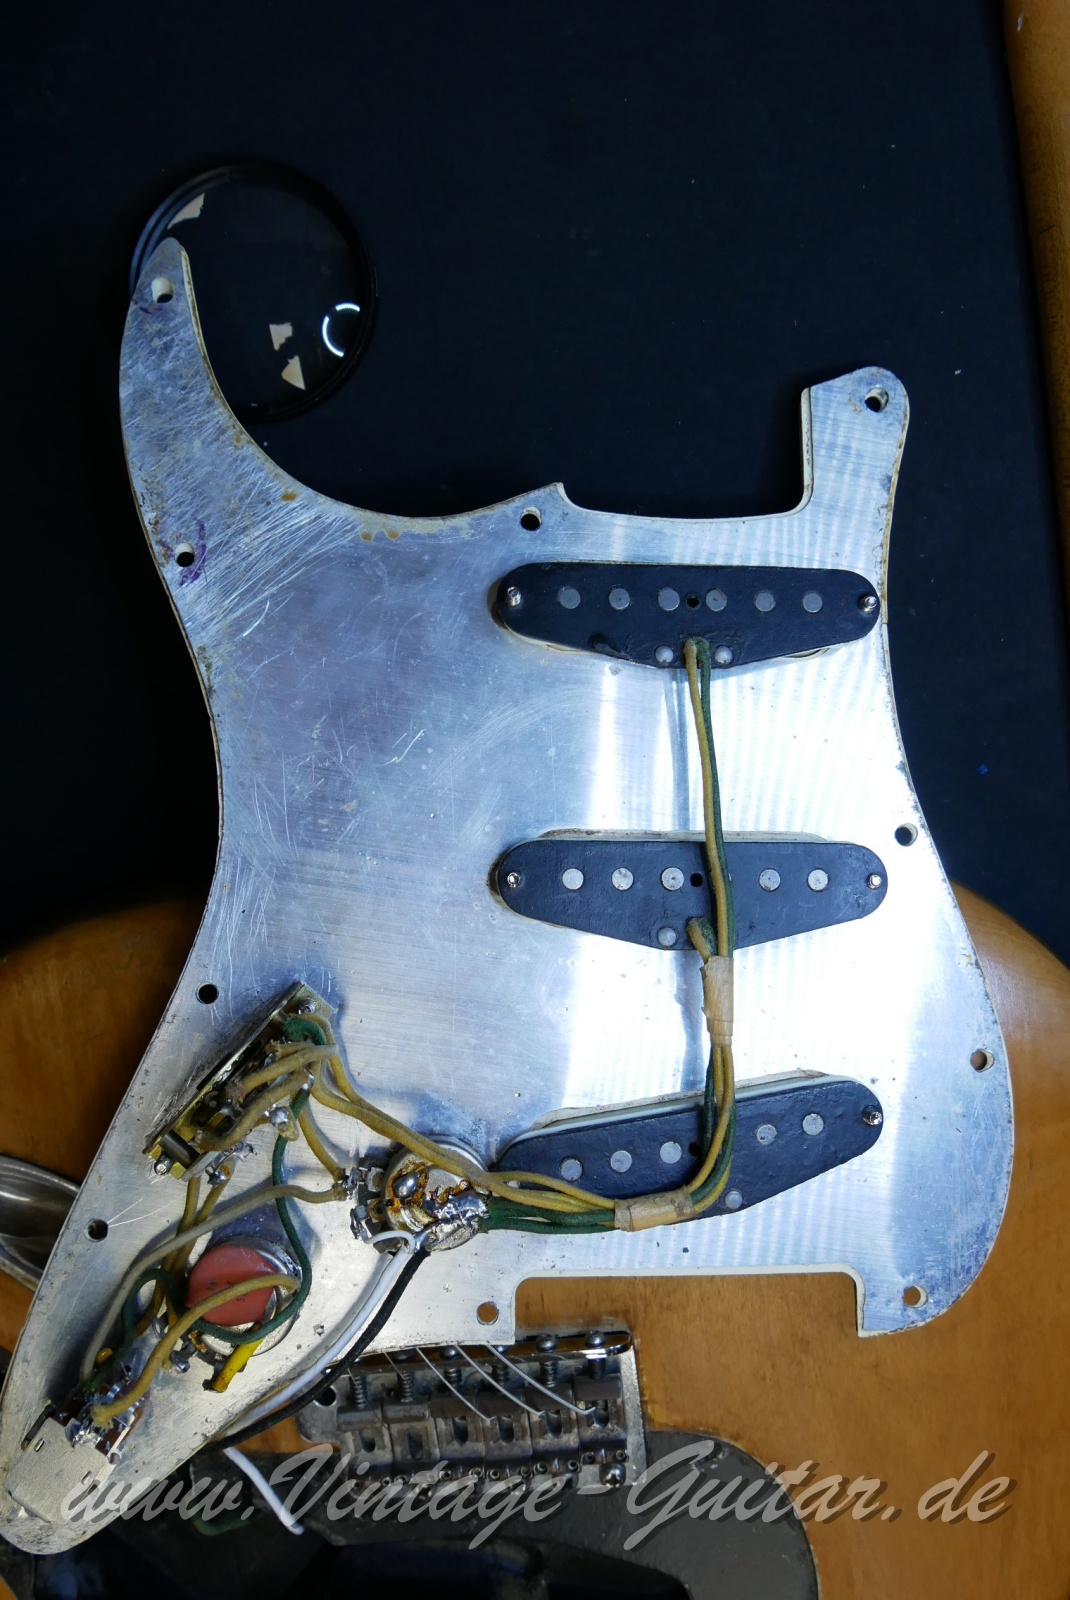 Fender_Stratocaster_body_stripped_1966-024.JPG